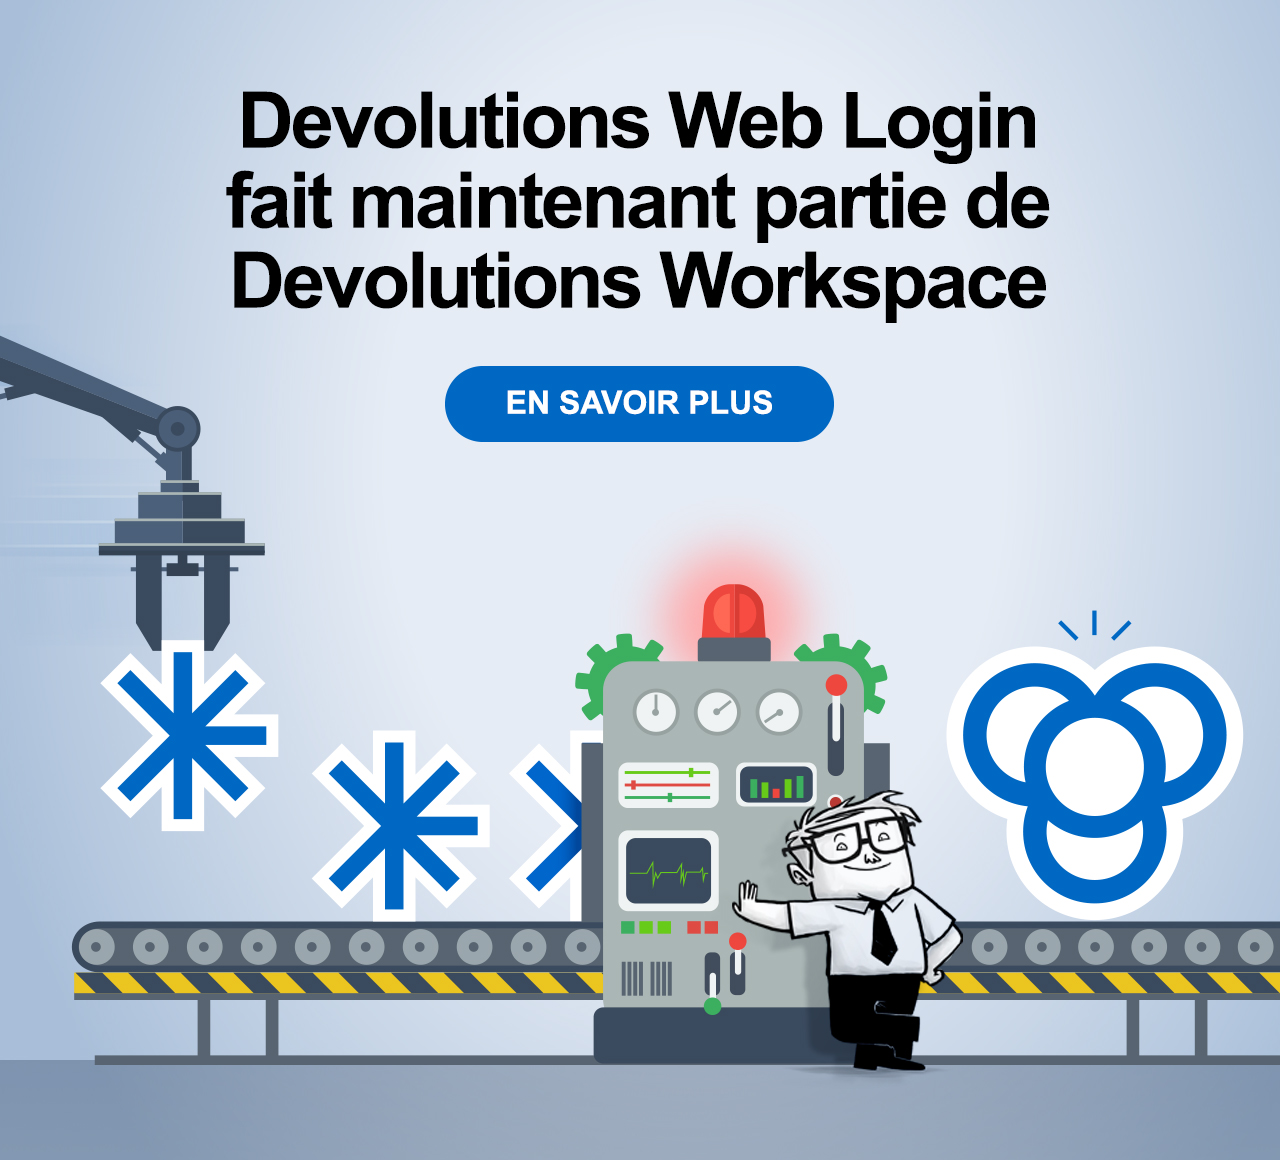 Devolutions Web Login fait maintenant partie de Devoltions Workspace